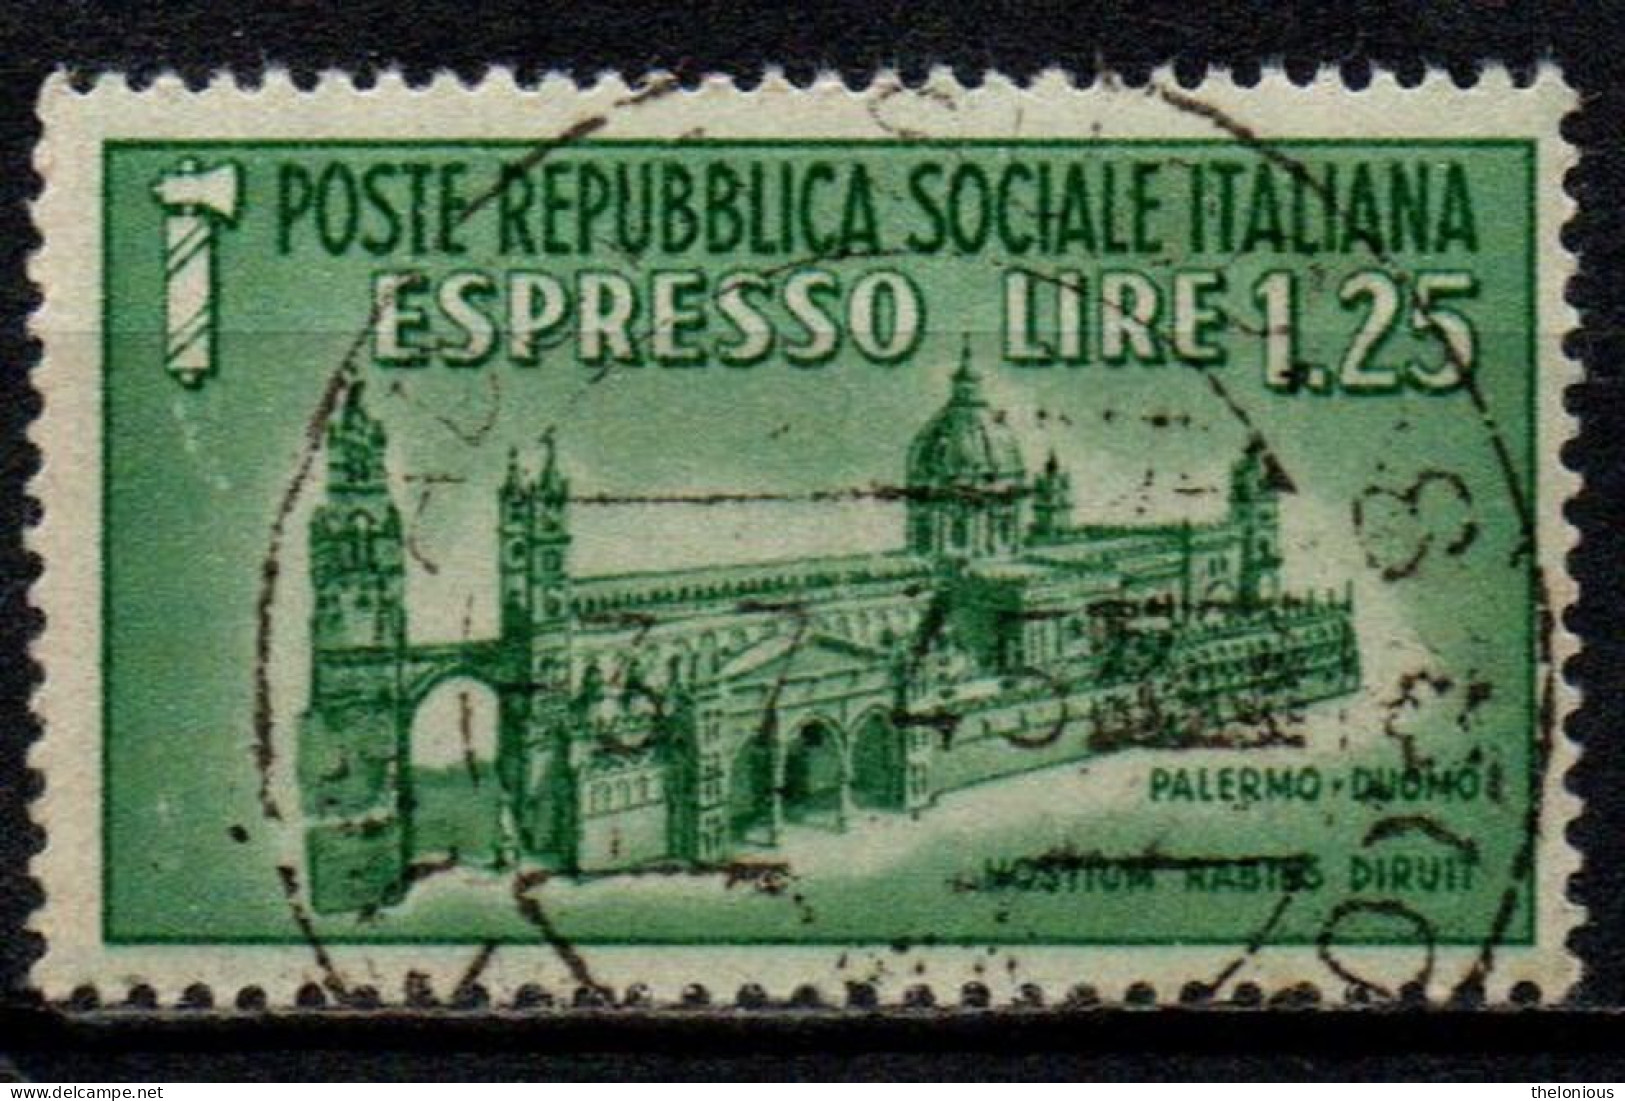 1944 Repubblica Sociale: Monumenti Distrutti - Espresso Lire 1,25 Usato - Exprespost